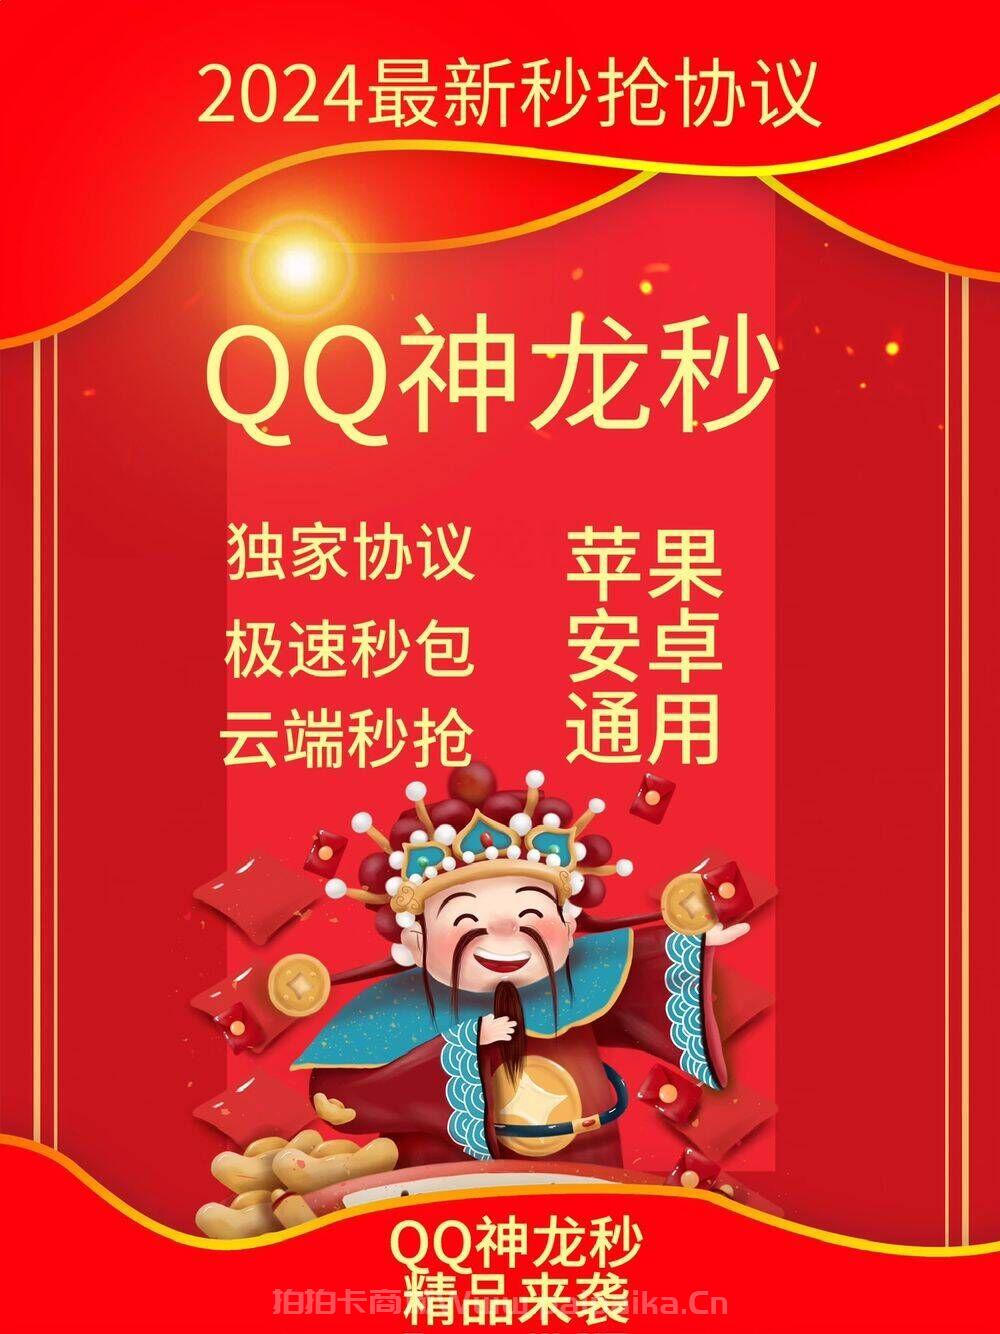 QQ神龙秒官网-卡密激活码购买以及登录-月卡授权